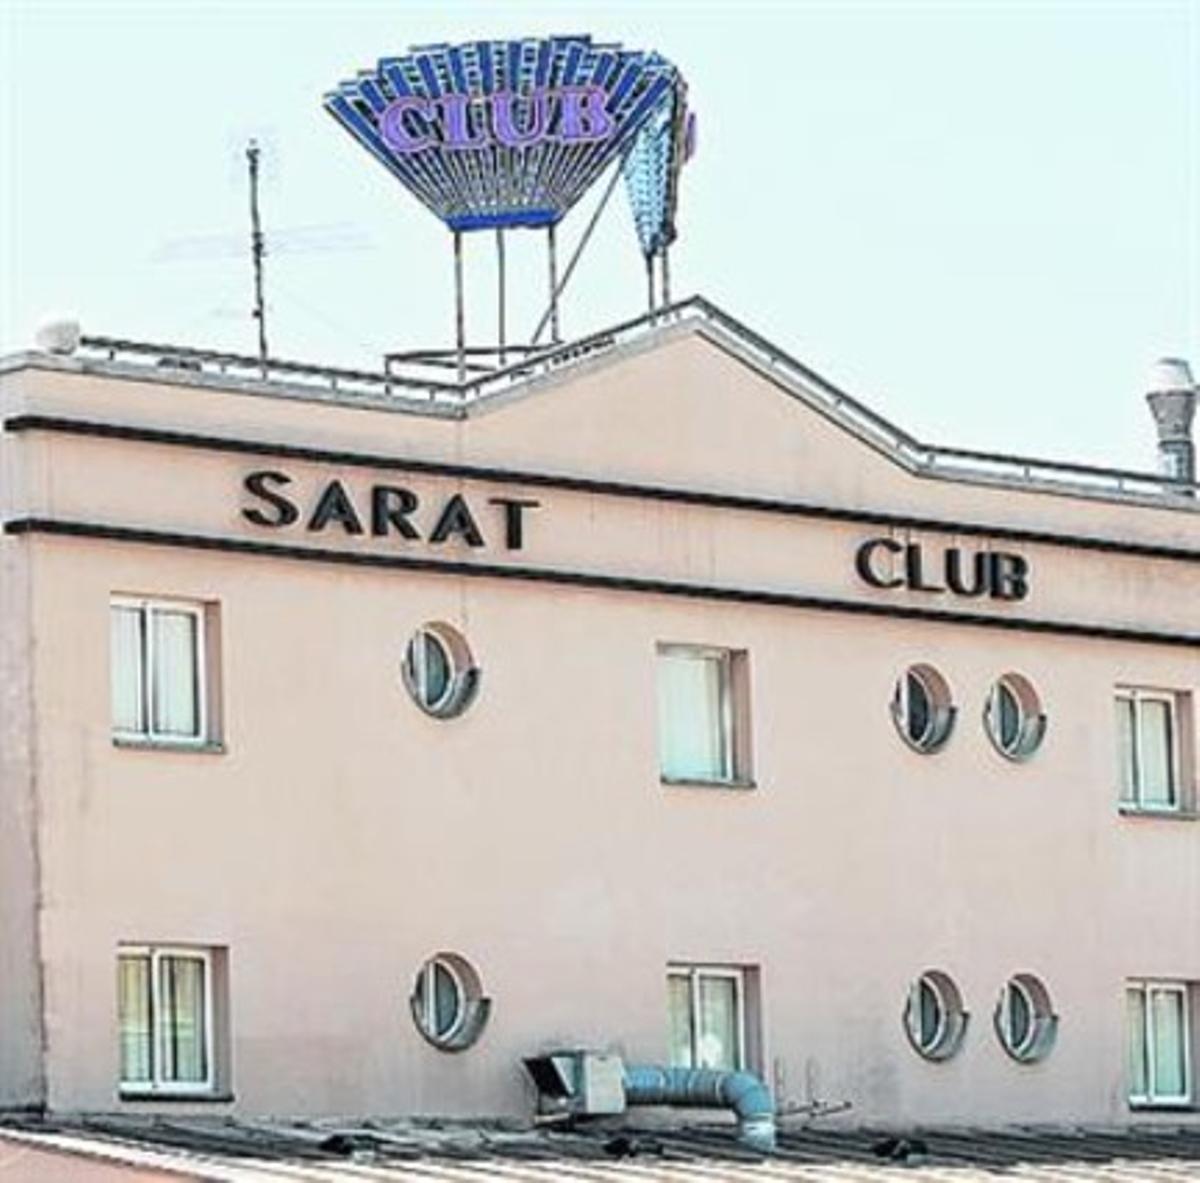 El club Saratoga de Castelldefels, cerrado.